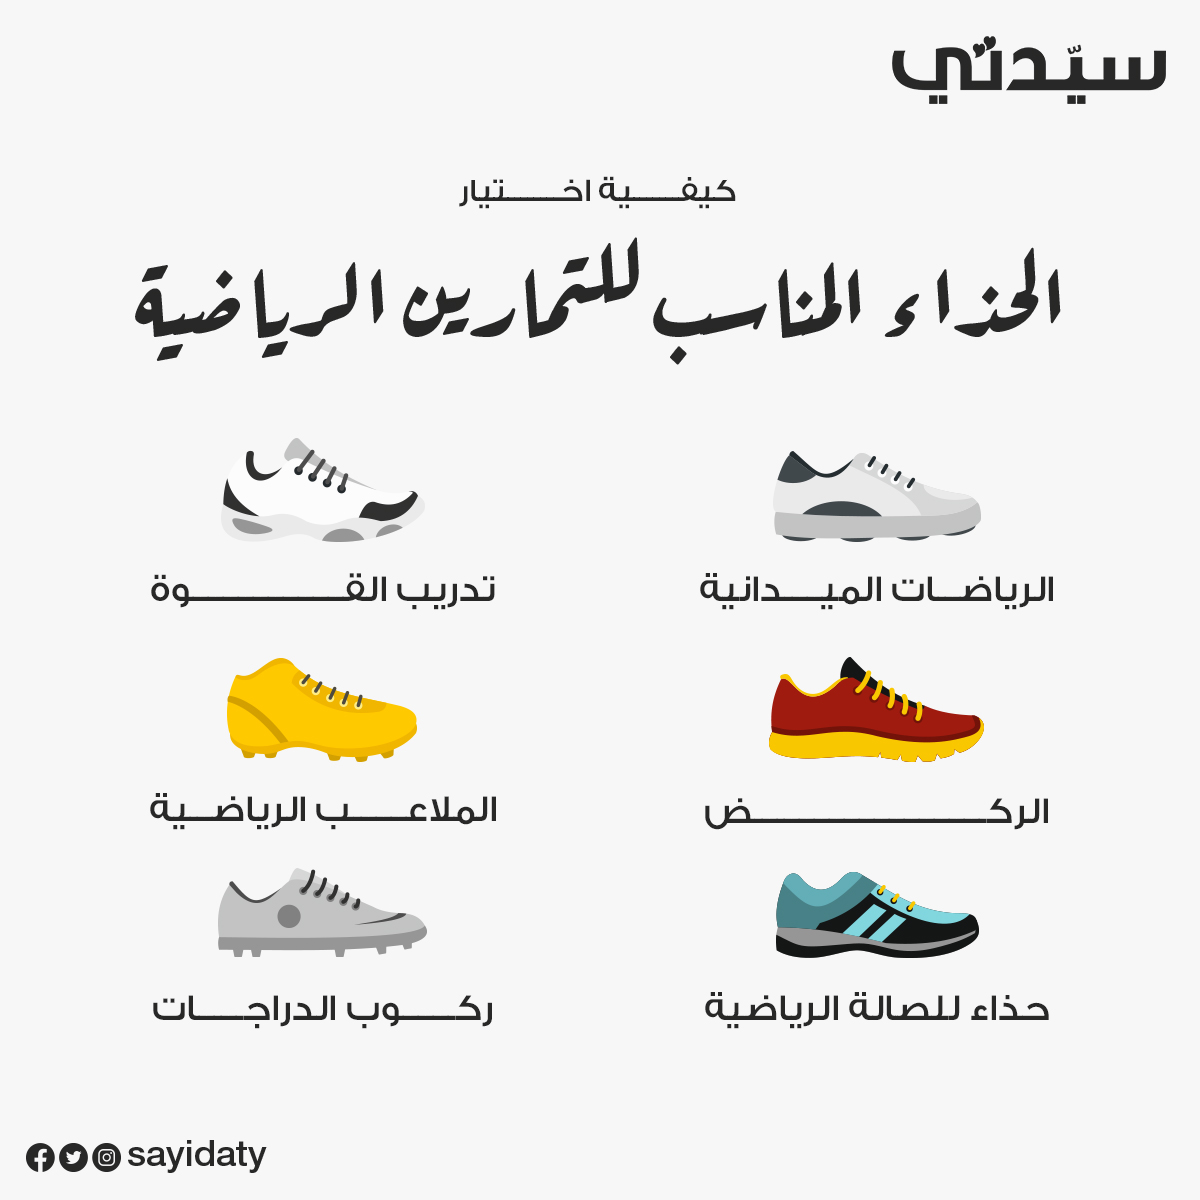 سبب اختيار حذاء مناسب عند المشي##